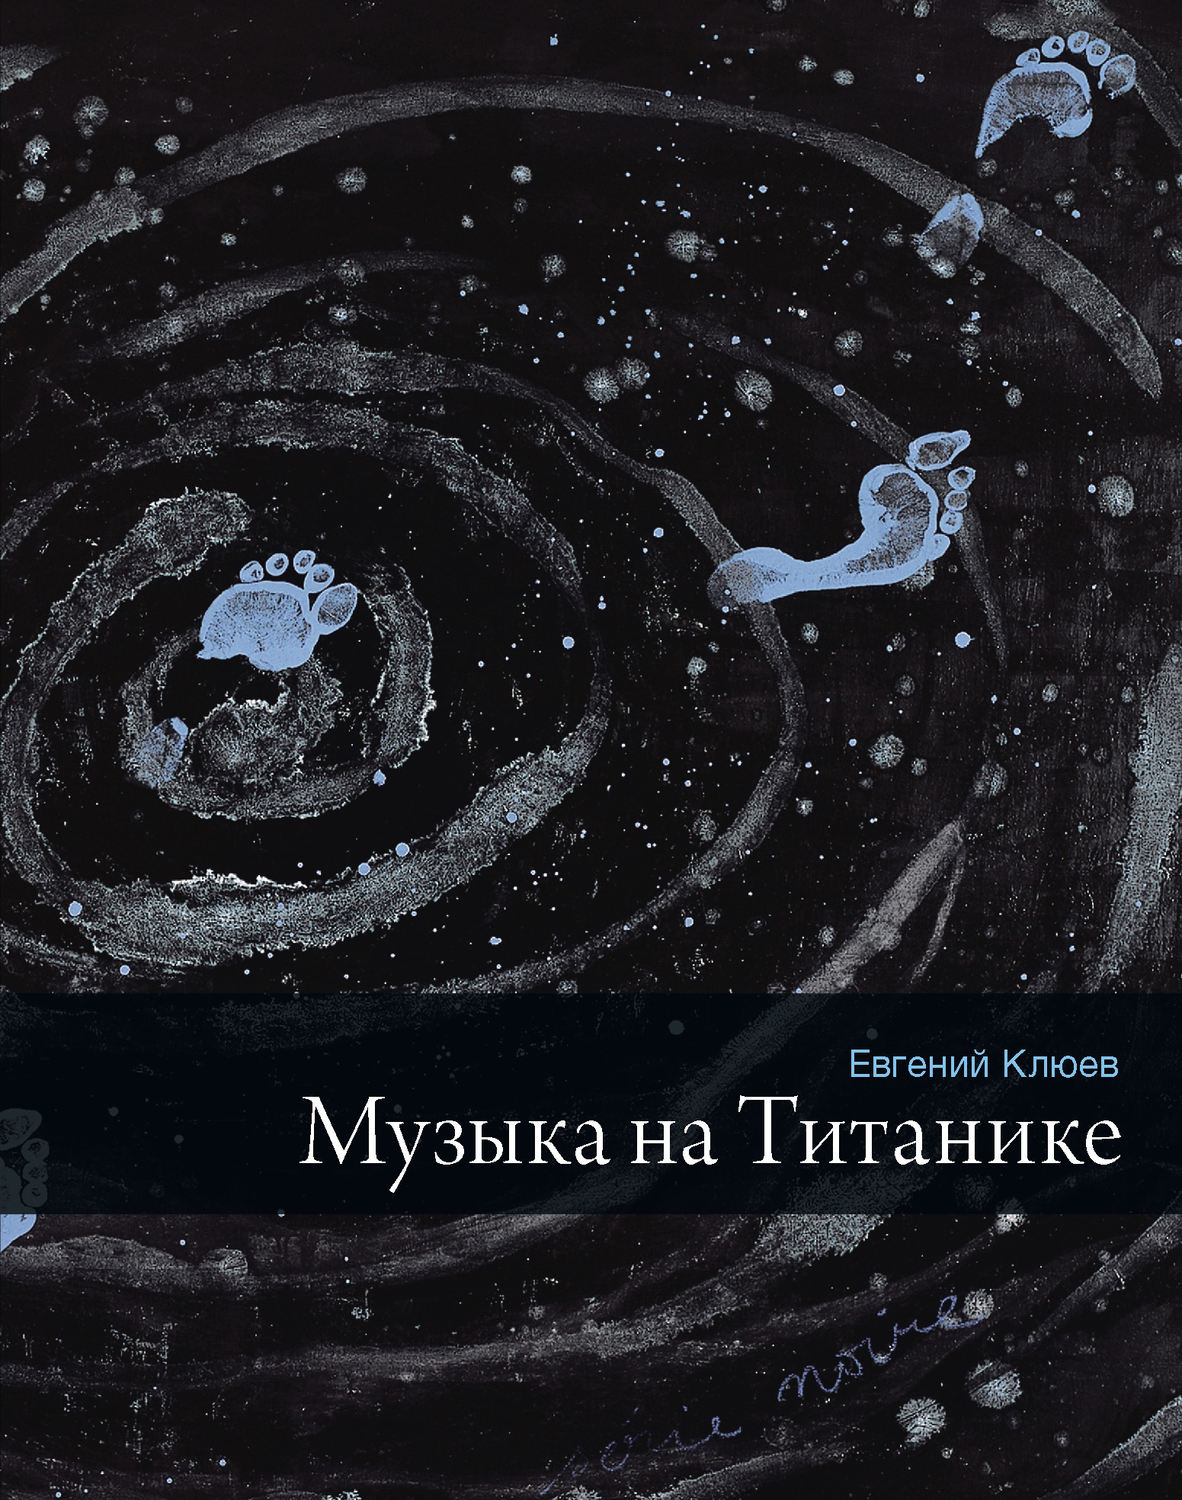 Купить Музыка на Титанике (сборник), Евгений Клюев